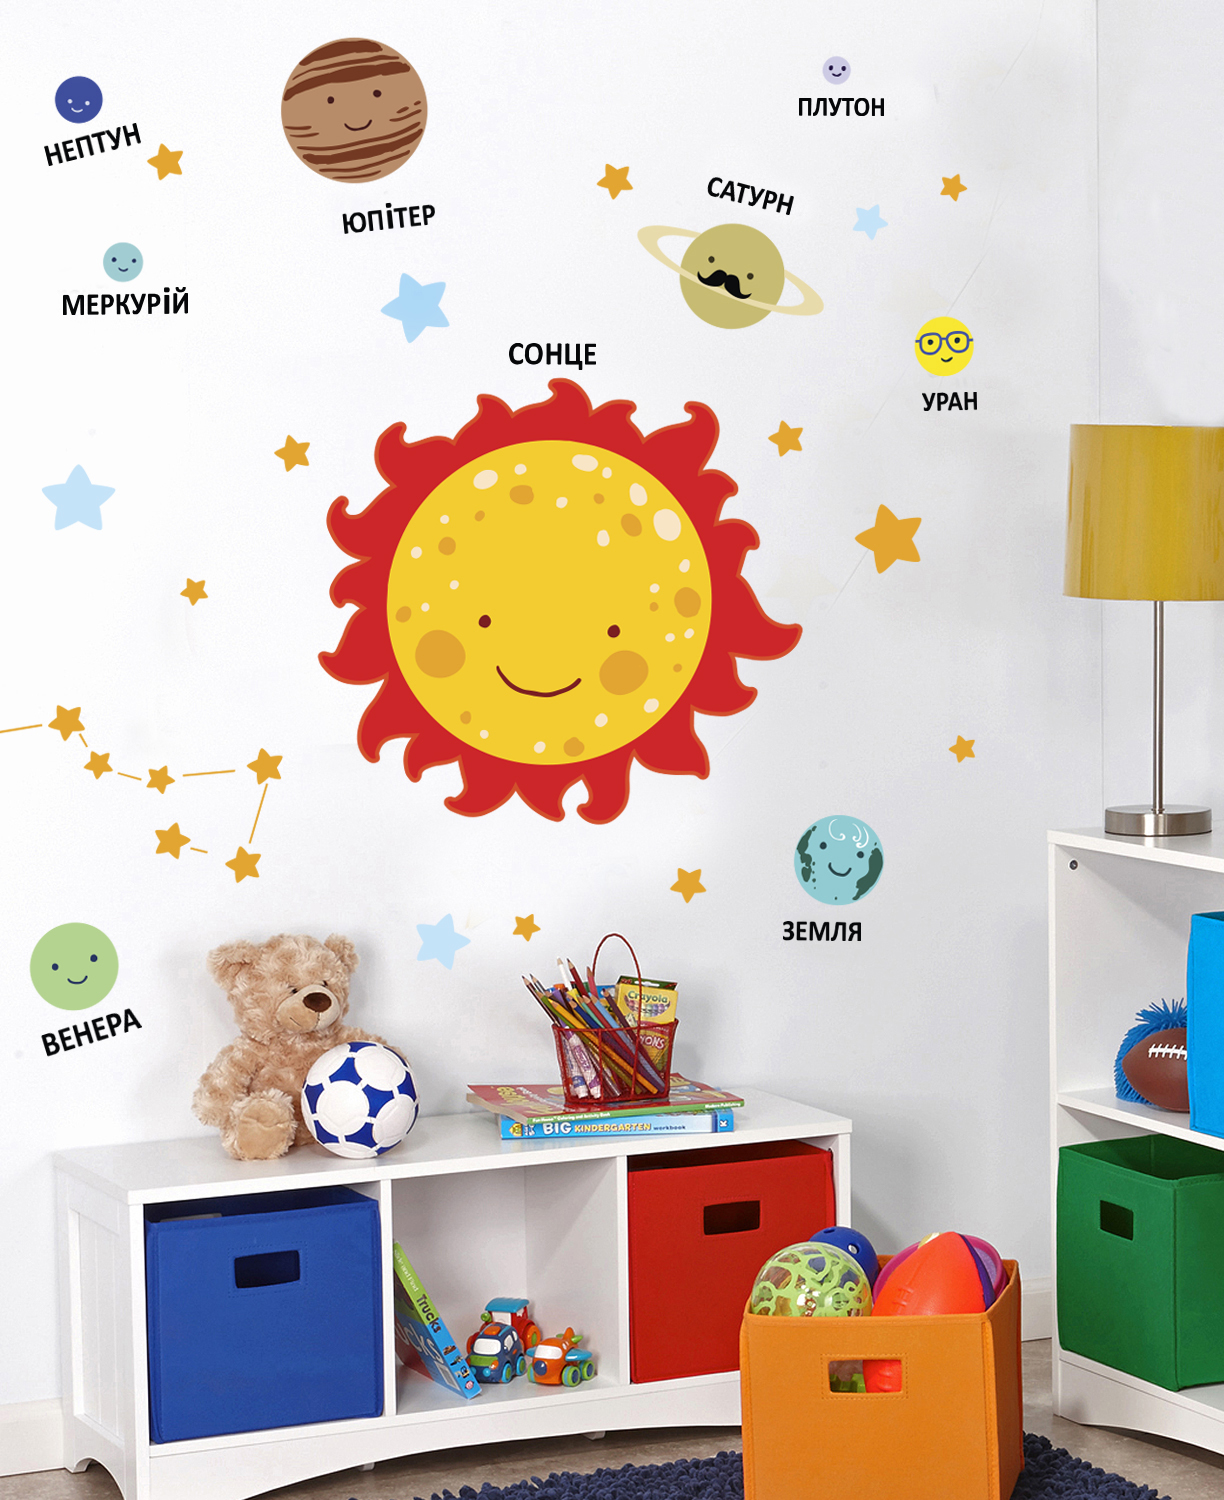 наклейка солнечная система фото, наклейка планеты фото, наклейка на стену солнце и планеты фото, наклейка для интерьера детские планеты фото